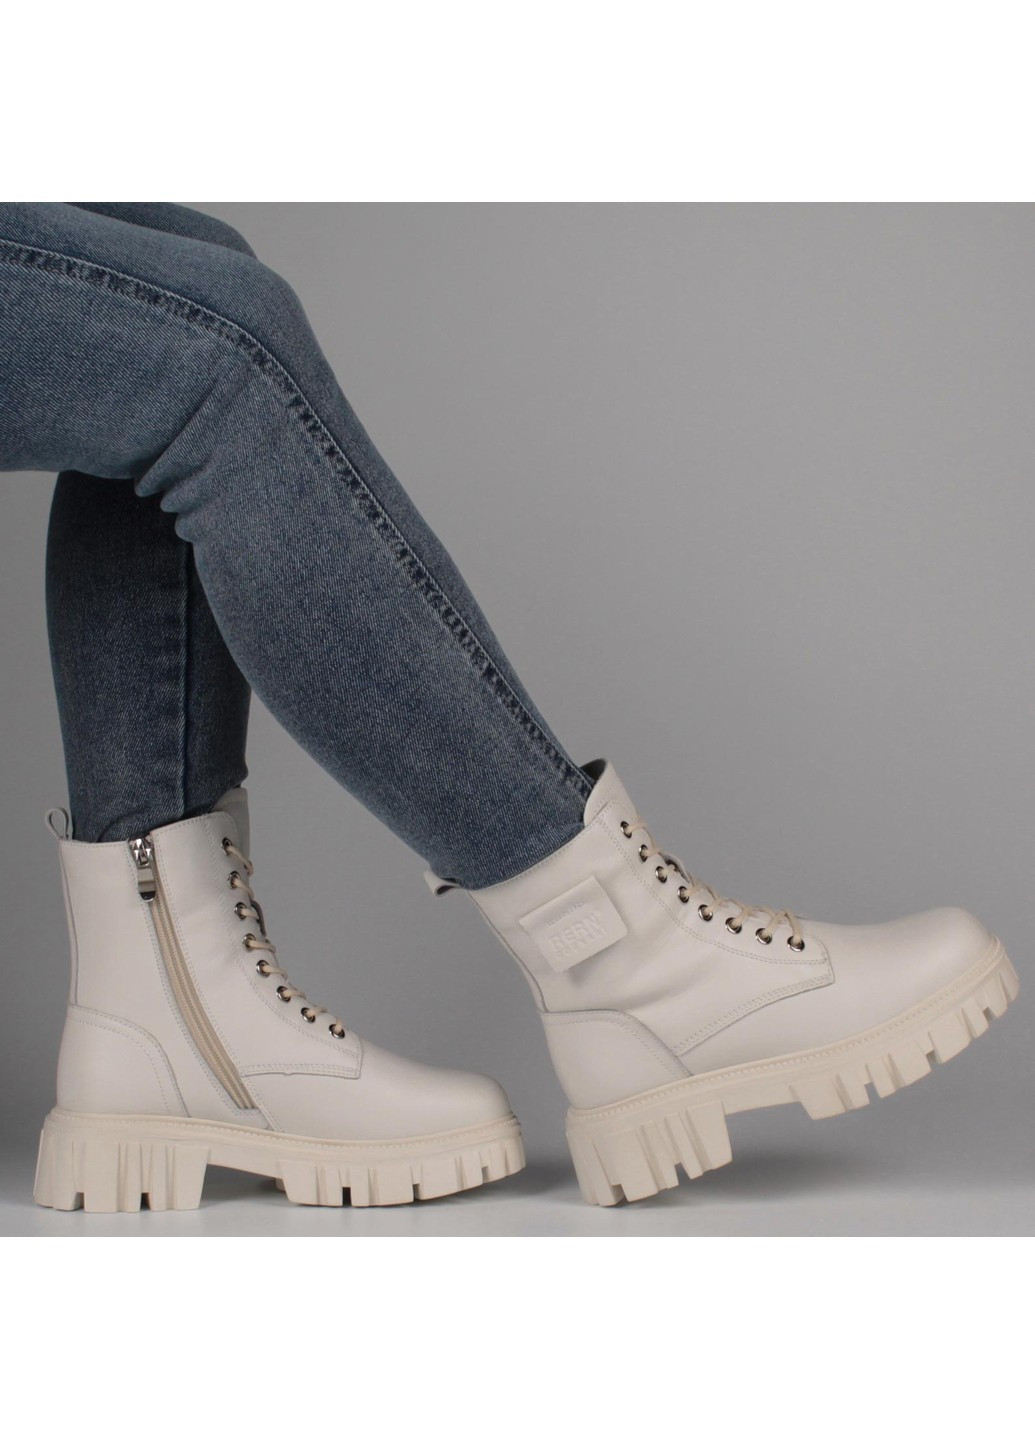 Зимние женские ботинки на низком ходу 198497 Lifexpert